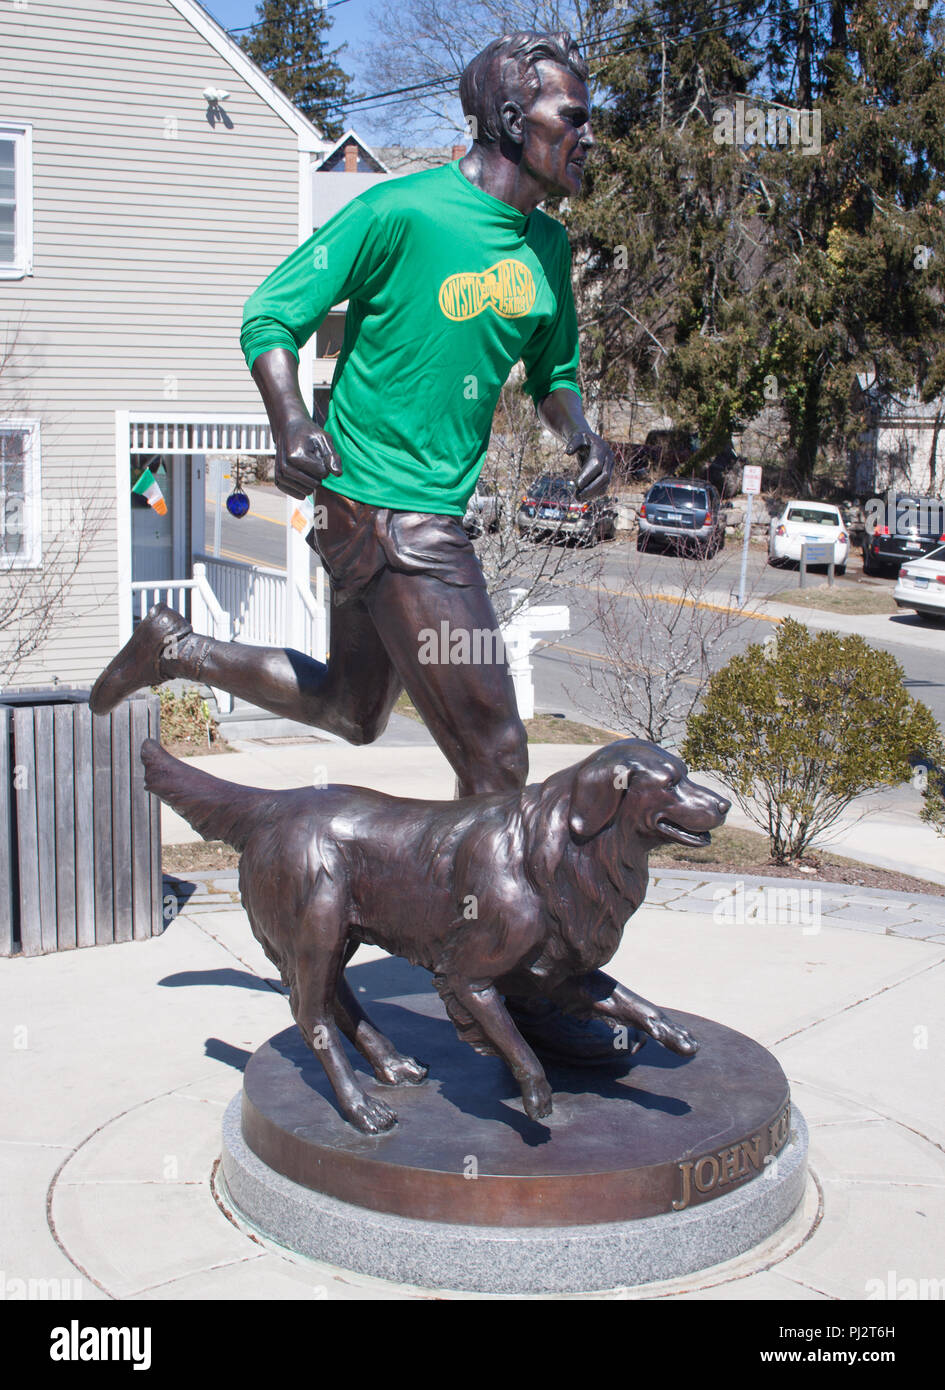 John Kelley e il suo cane statua in Mystic Connecticut, vincitore del 1957 Boston Marathon. Foto Stock